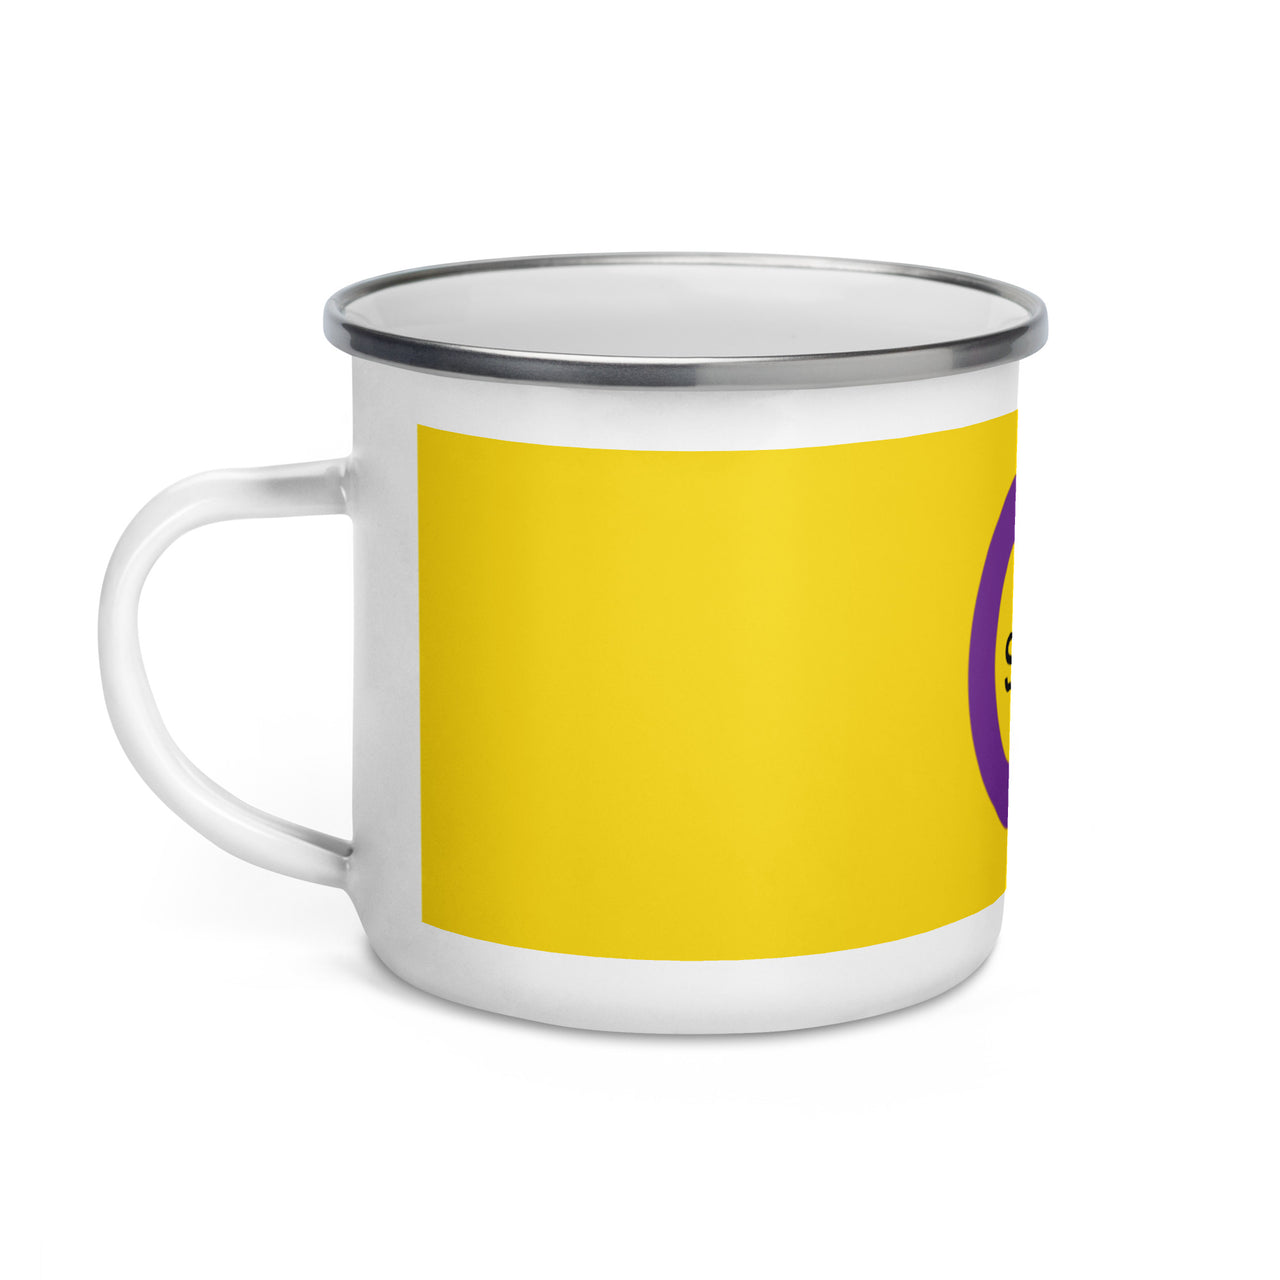 Intersexual Flag LGBTQ Enamel Coffee Mug SHAVA CO